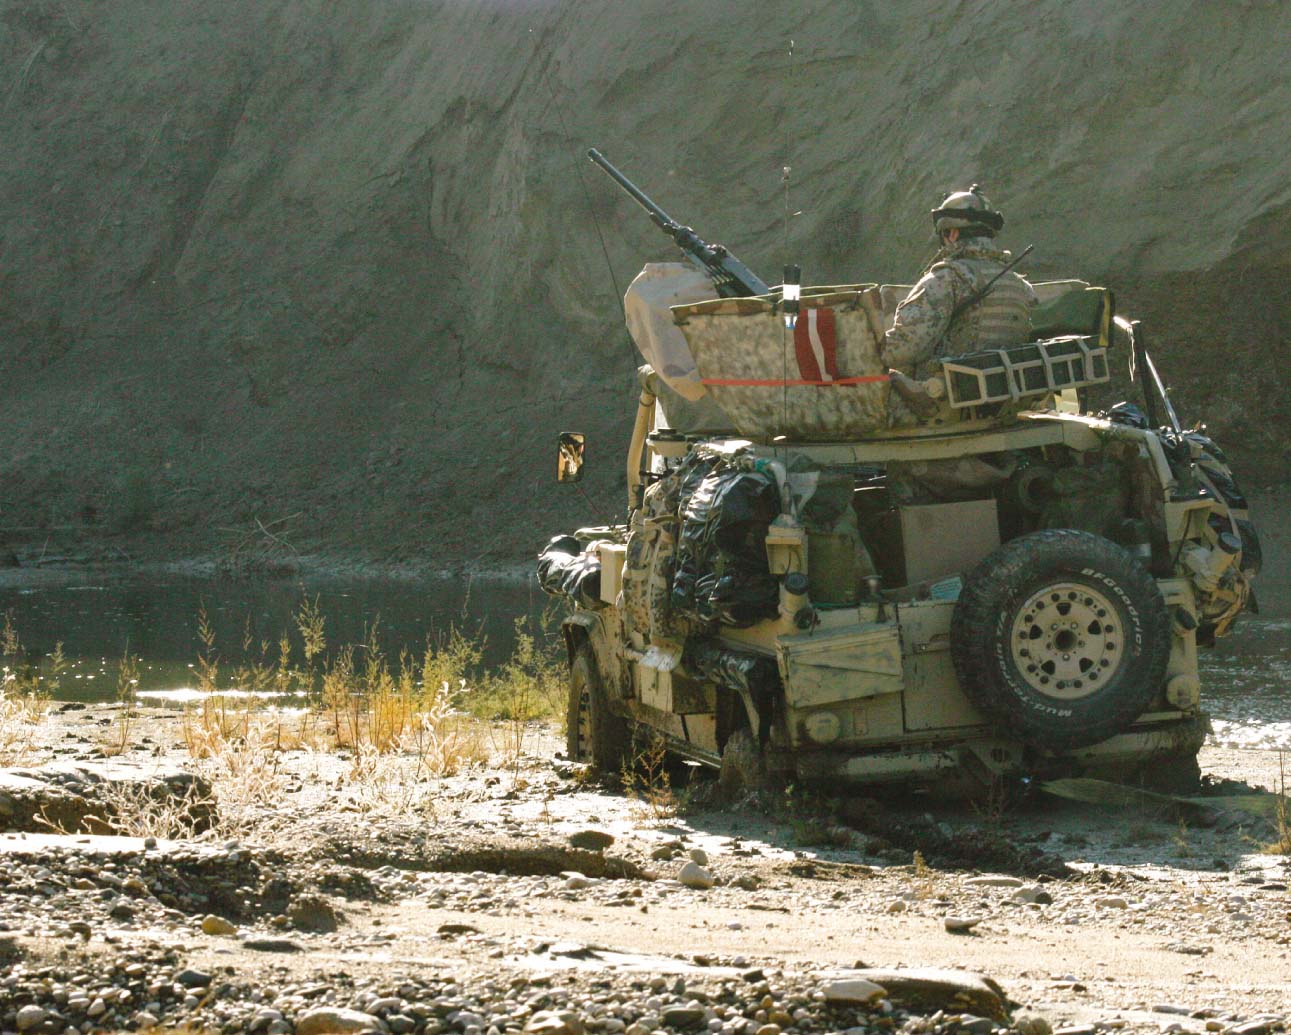 Jau astoto gadu Latvijas Nacionālie bruņotie spēki piedalās starptautiskajā misijā Afganistānā